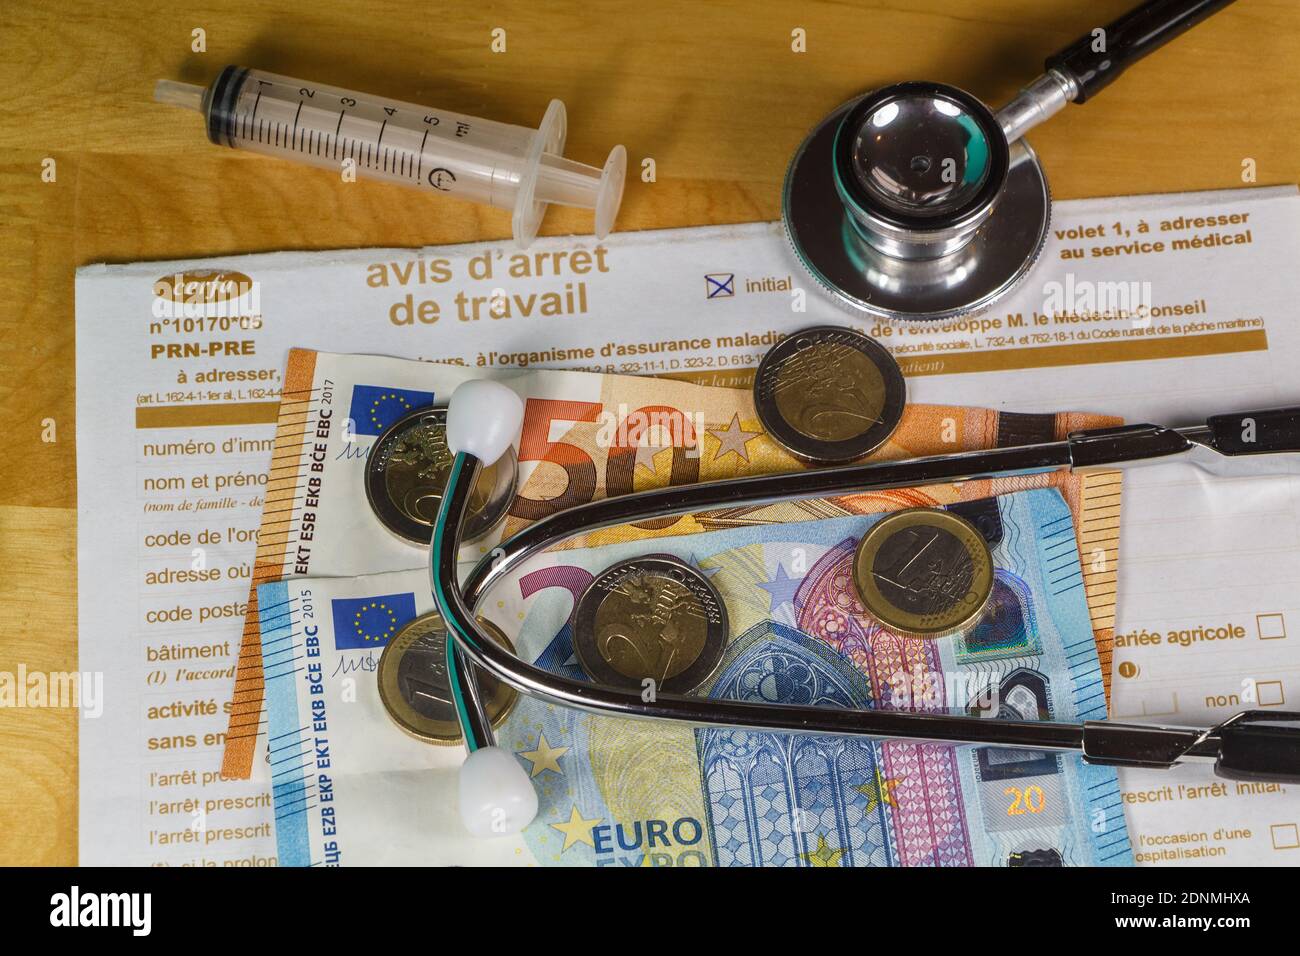 Avis d'arrêt de travail médical, seringue, stéthoscope noir, billets et pièces en euros Banque D'Images